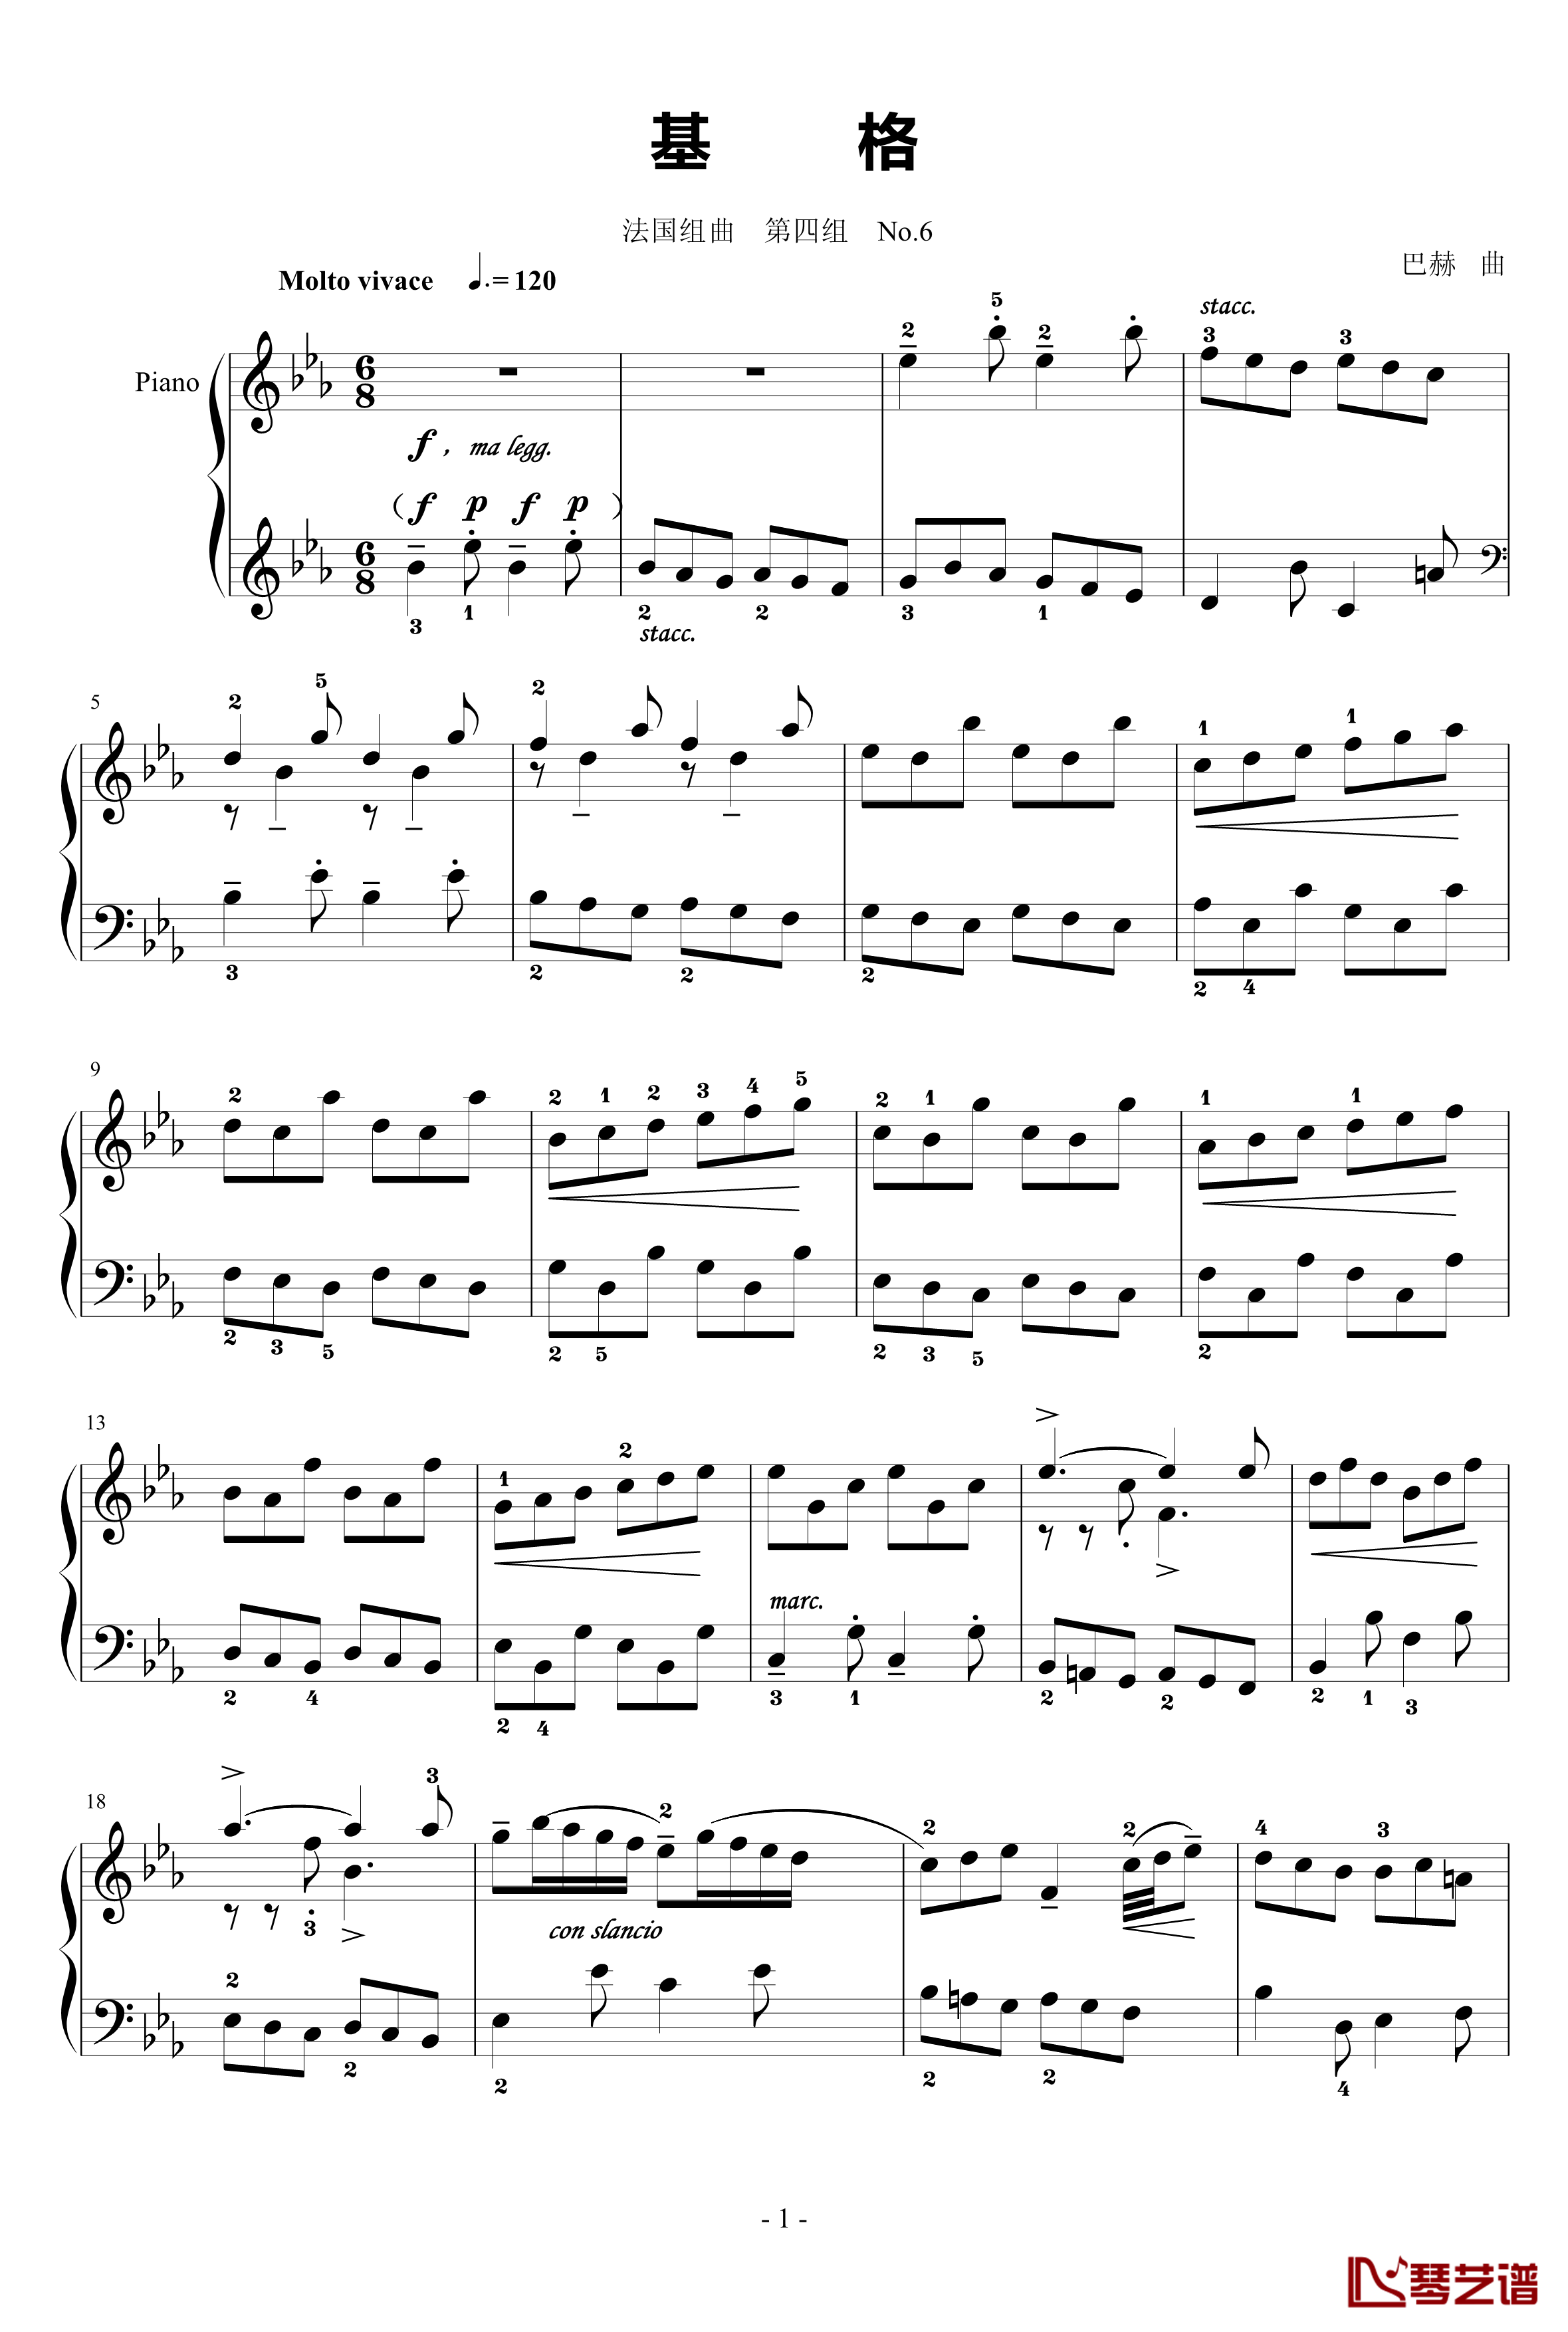 基格钢琴谱-法国组曲四No.6-奥芬巴赫1